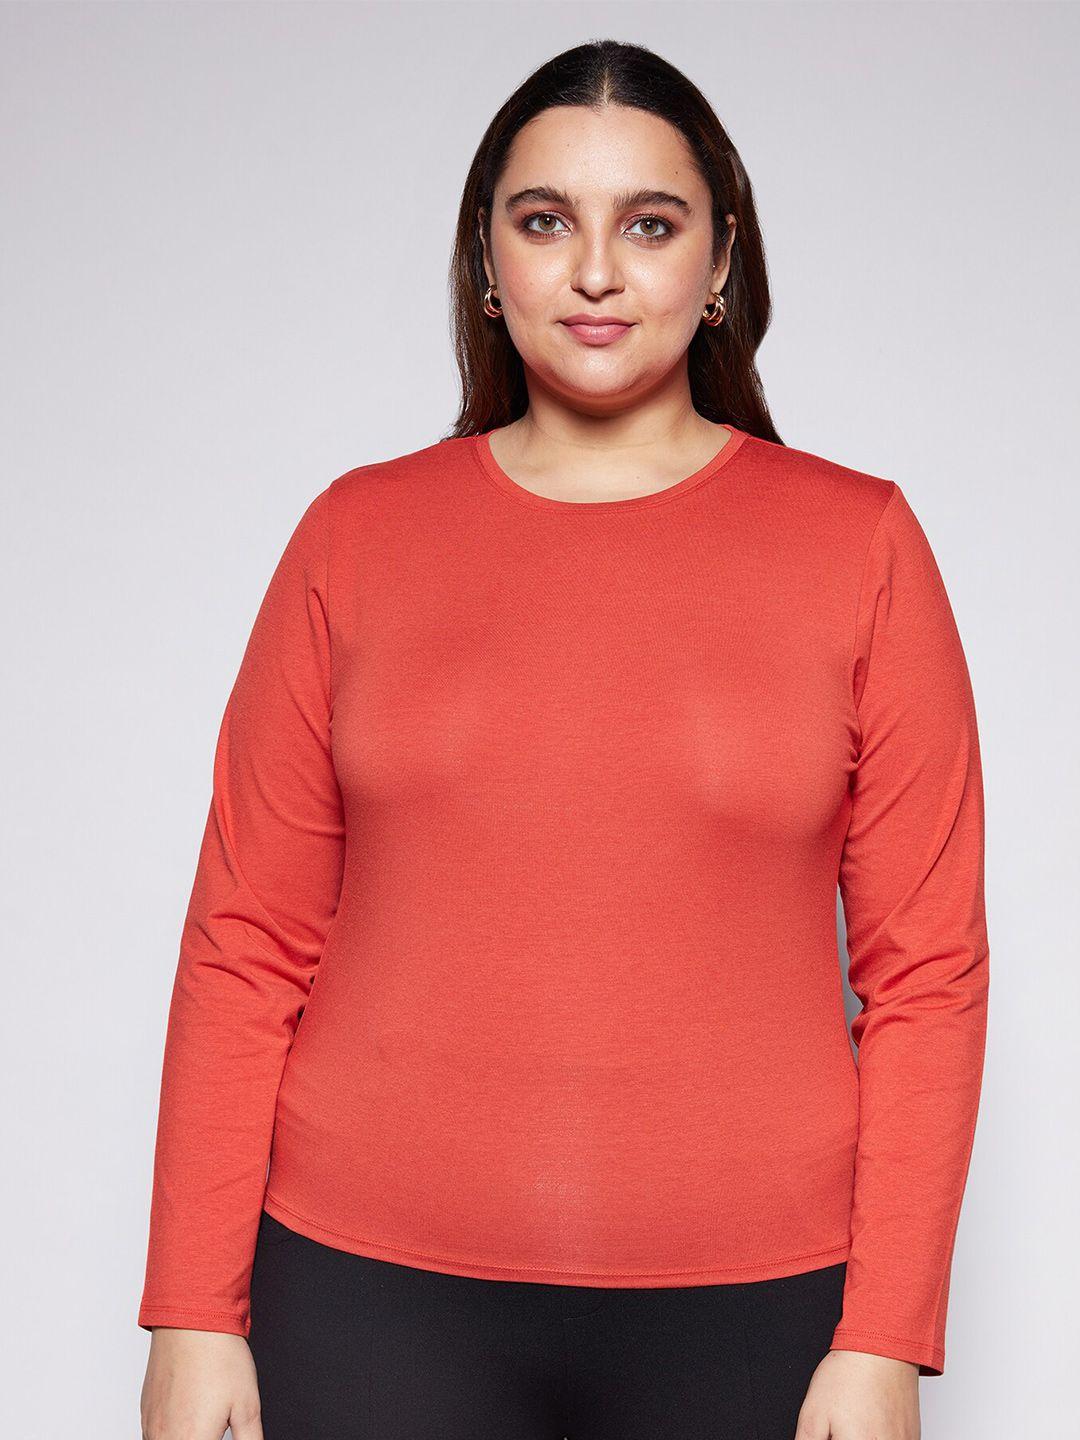 20dresses women plus size slim fit t-shirt